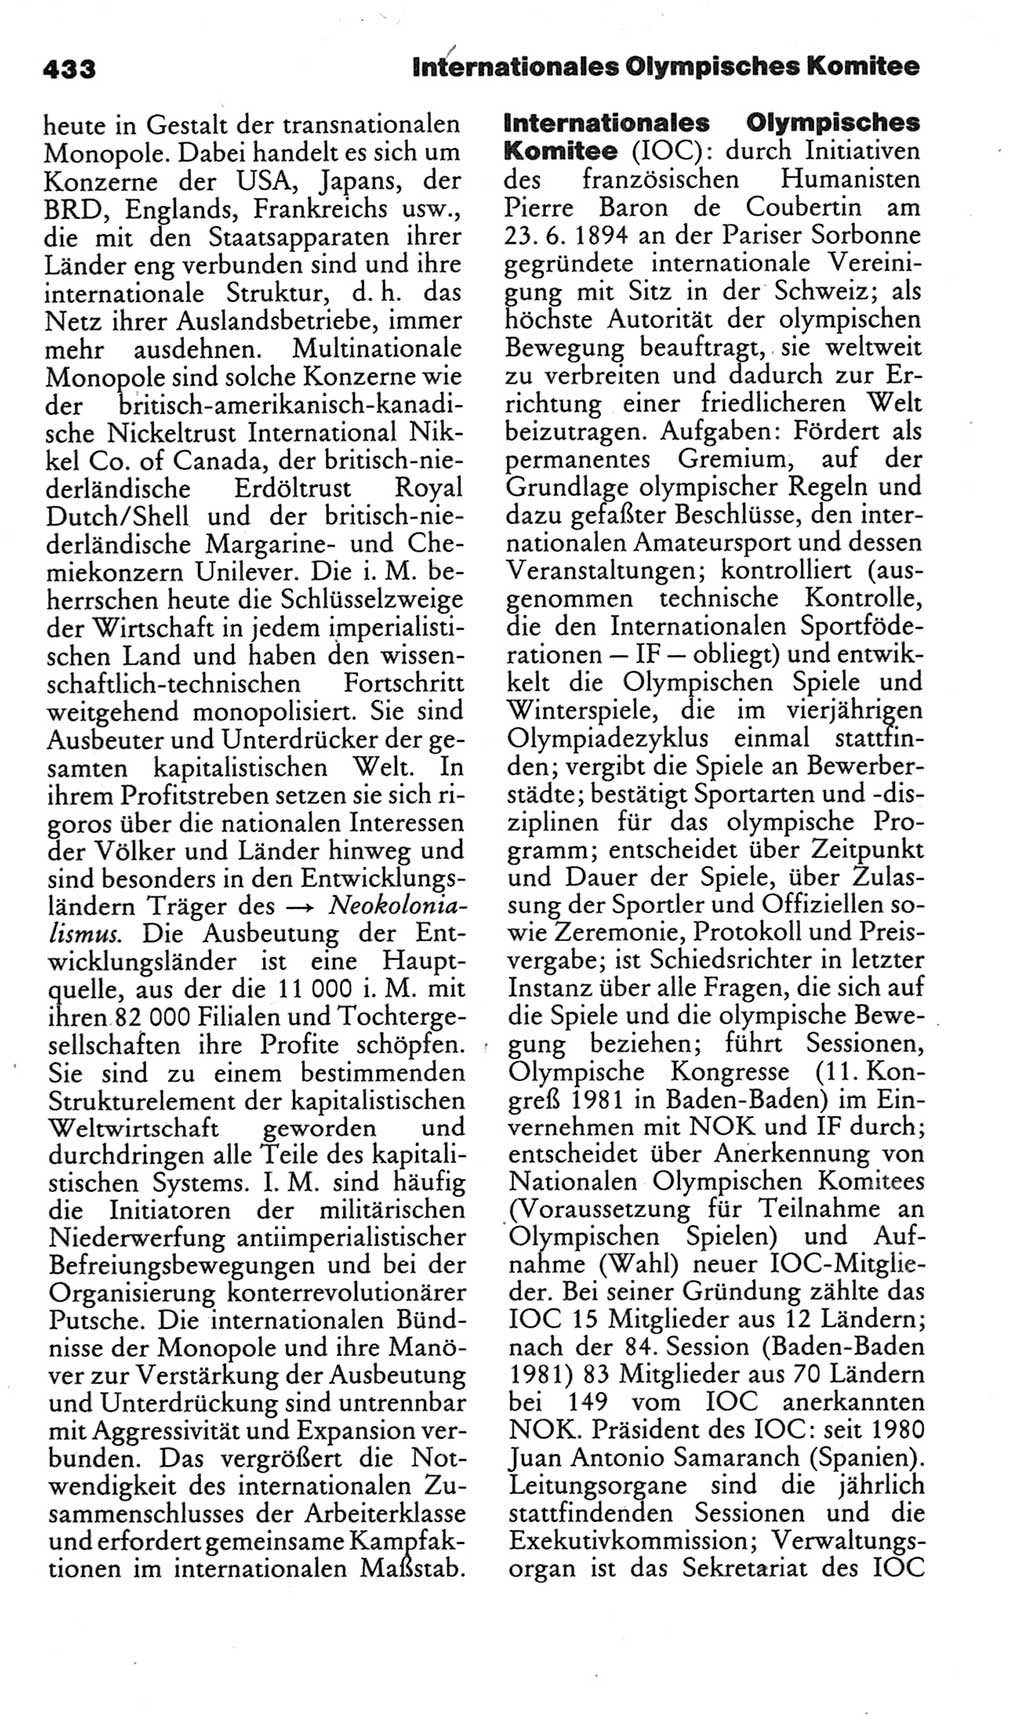 Kleines politisches Wörterbuch [Deutsche Demokratische Republik (DDR)] 1983, Seite 433 (Kl. pol. Wb. DDR 1983, S. 433)